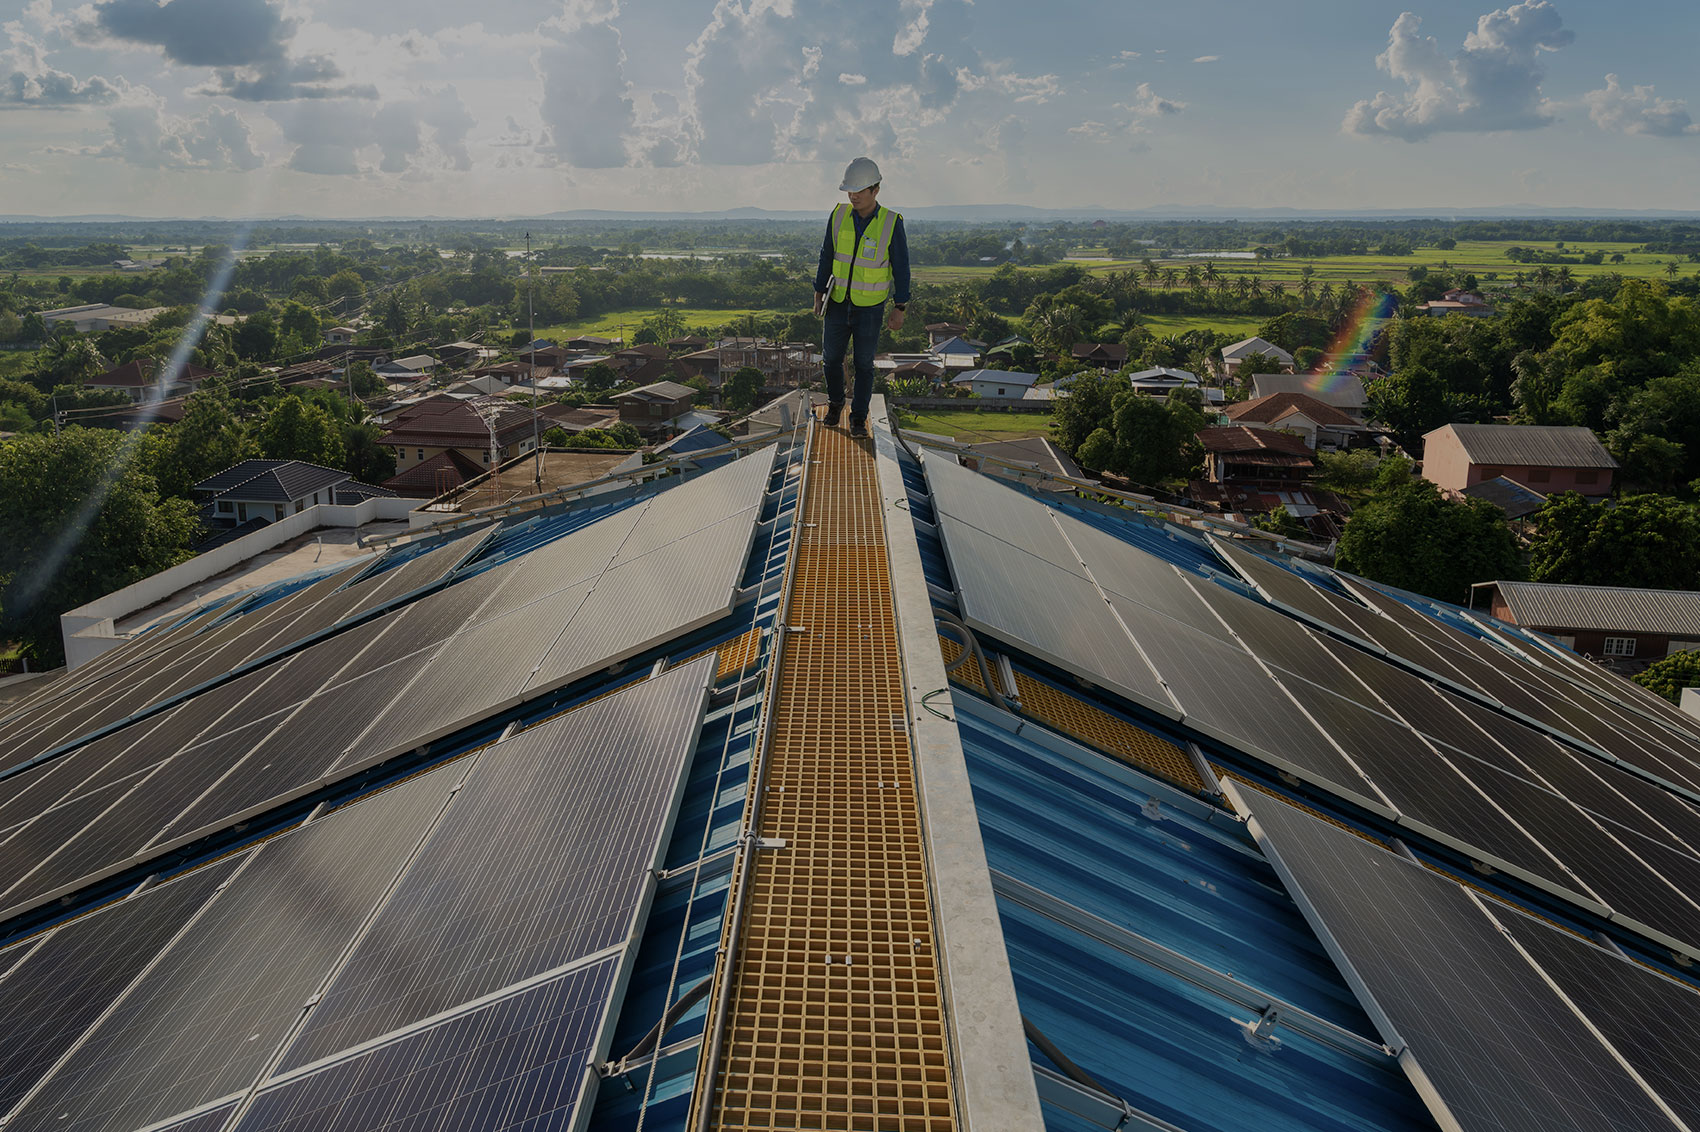 homme sur un toit avec des panneaux photovoltaiques